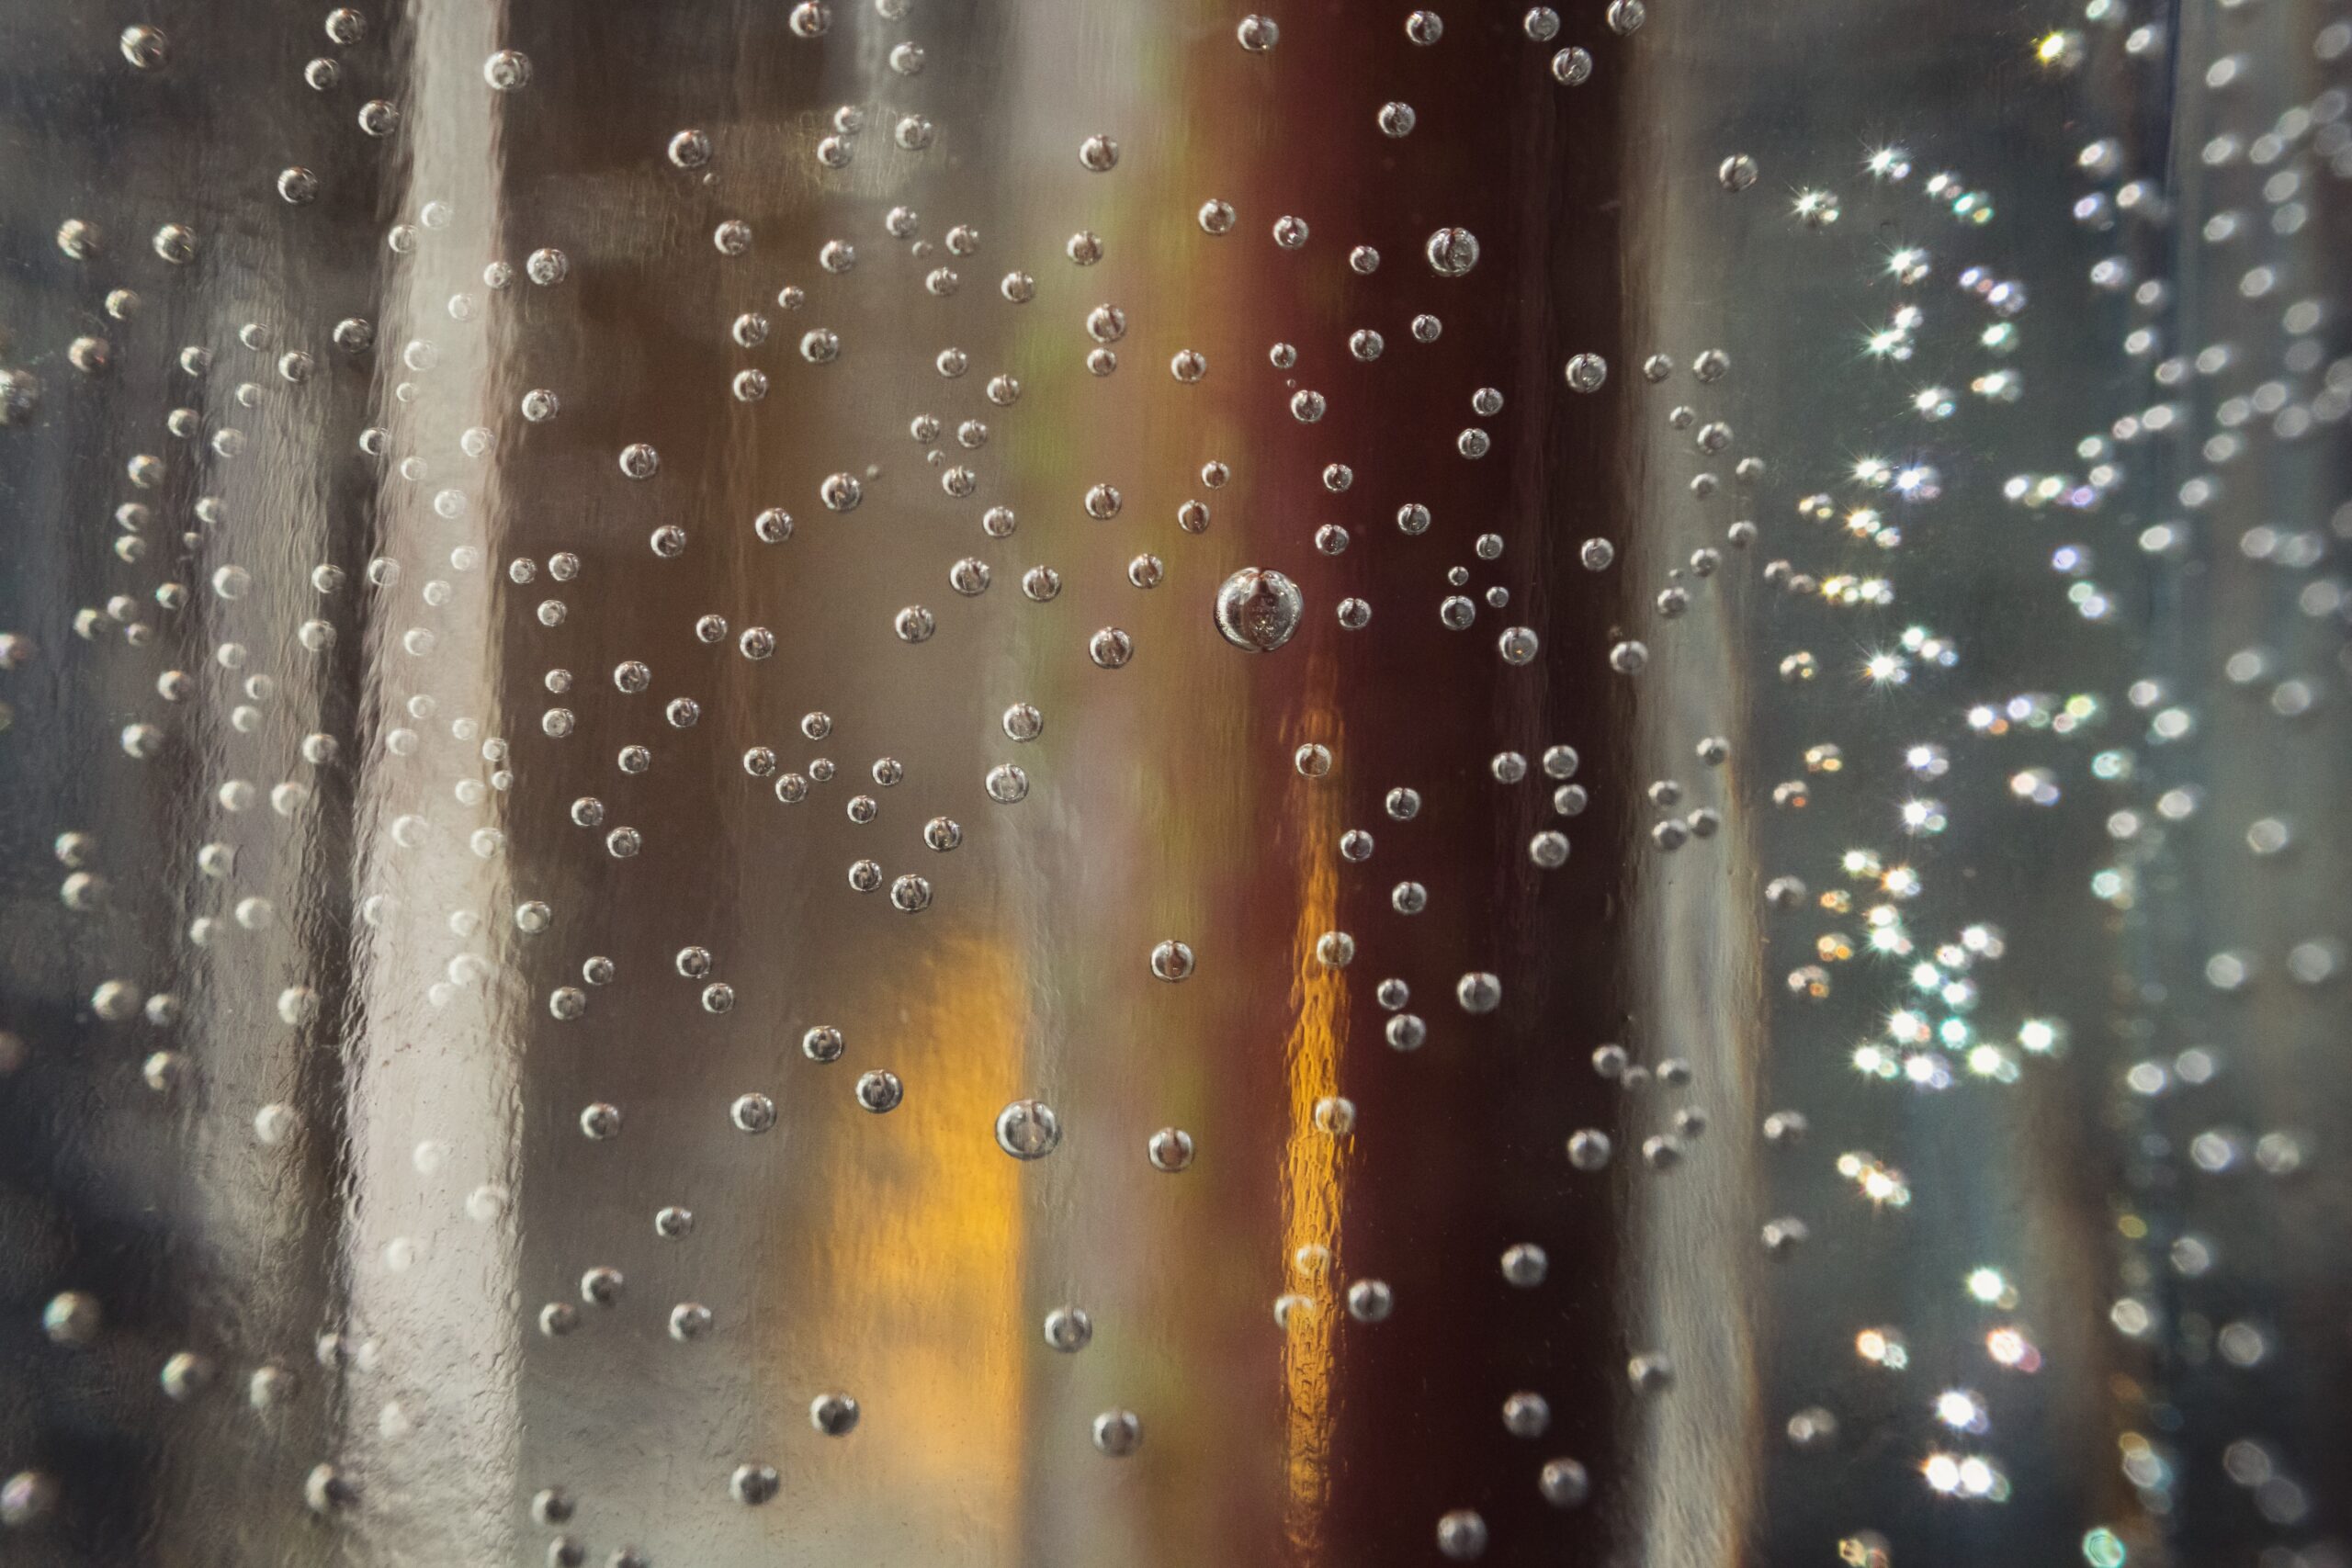 Nitrogen droplets.